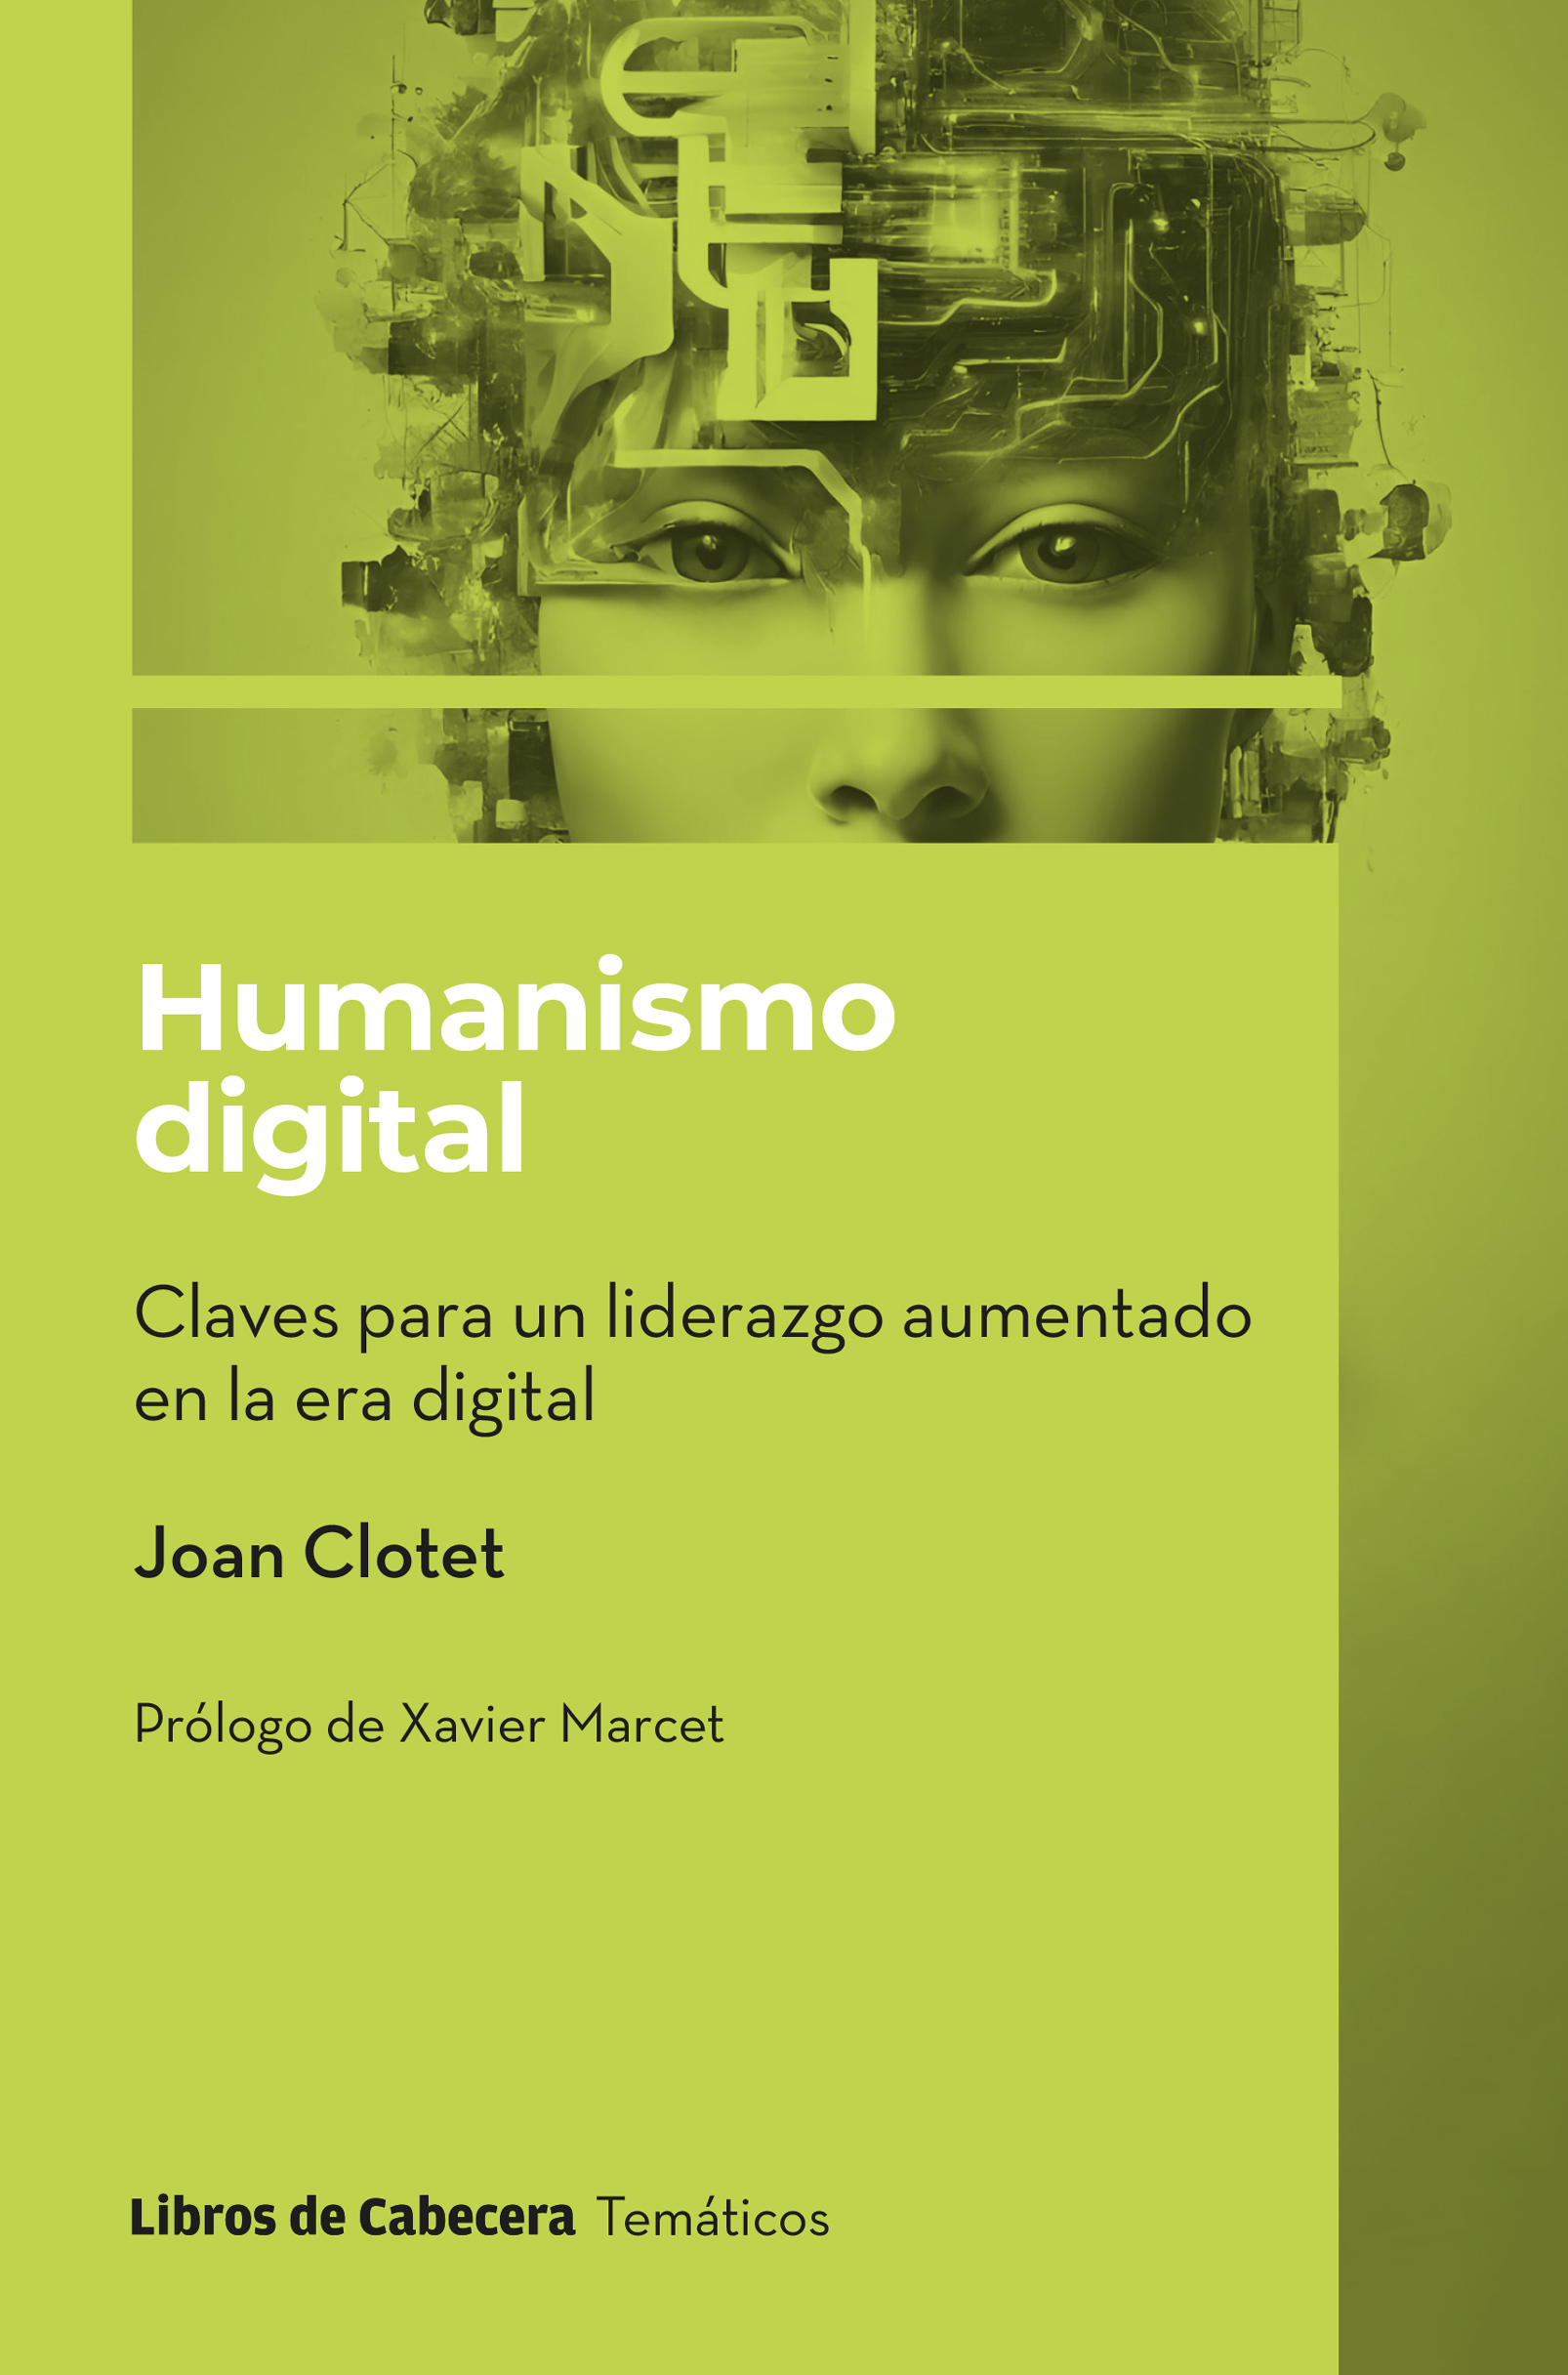 Humanismo digital : claves para un liderazgo aumentado en la era digital / Joan Clotet ; prólogo de Xavier Marcet